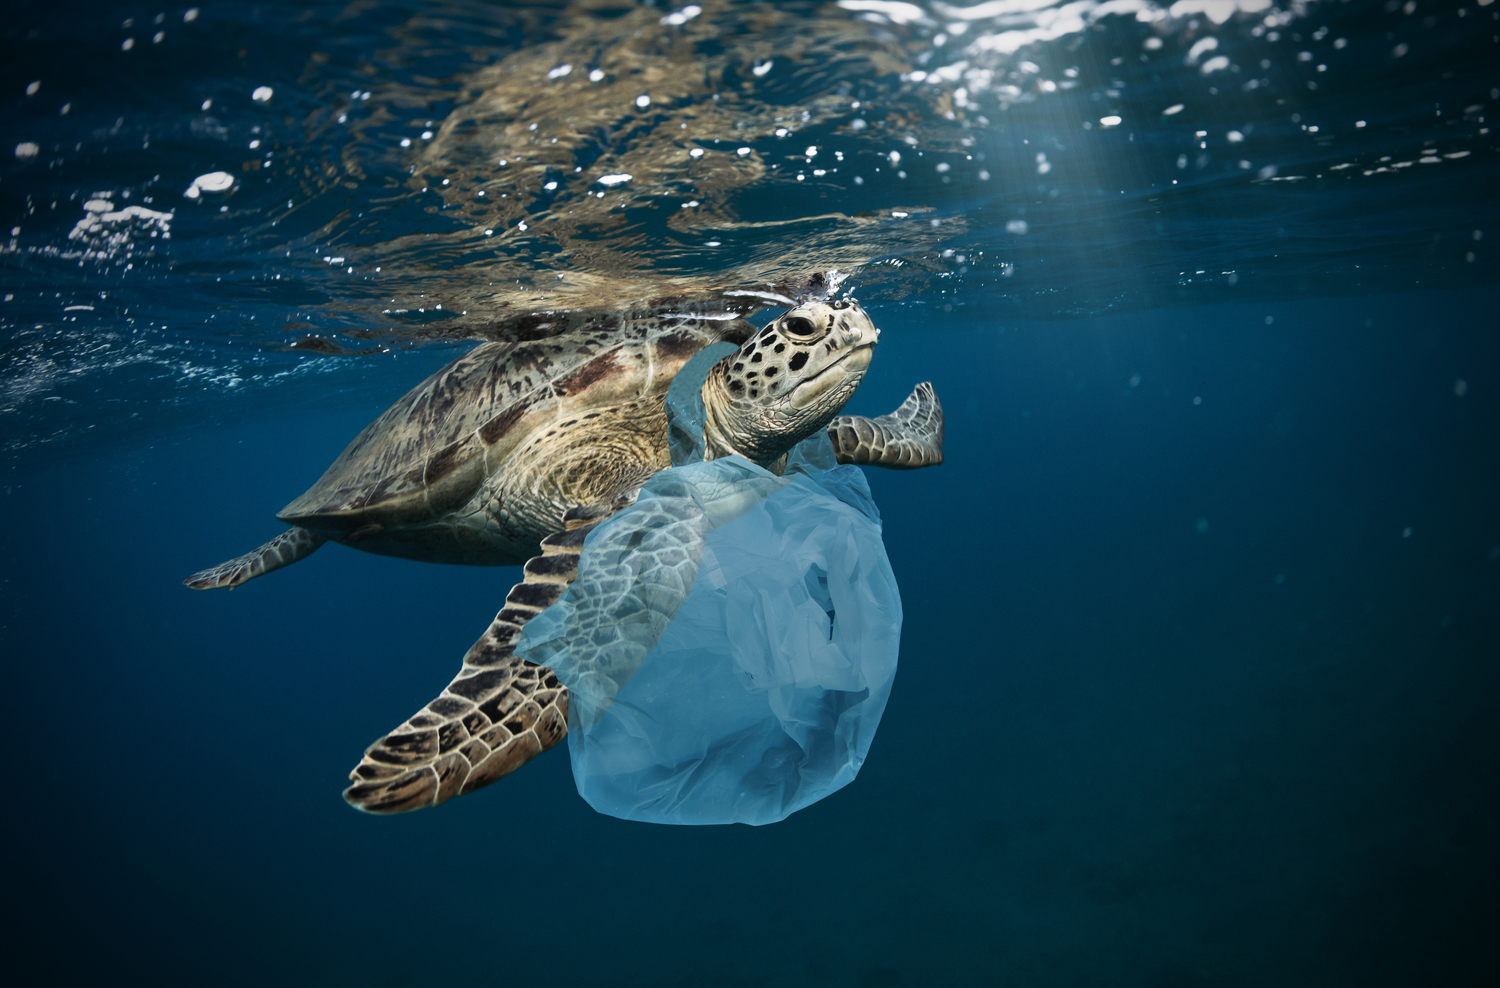 Eliminating plastic bags